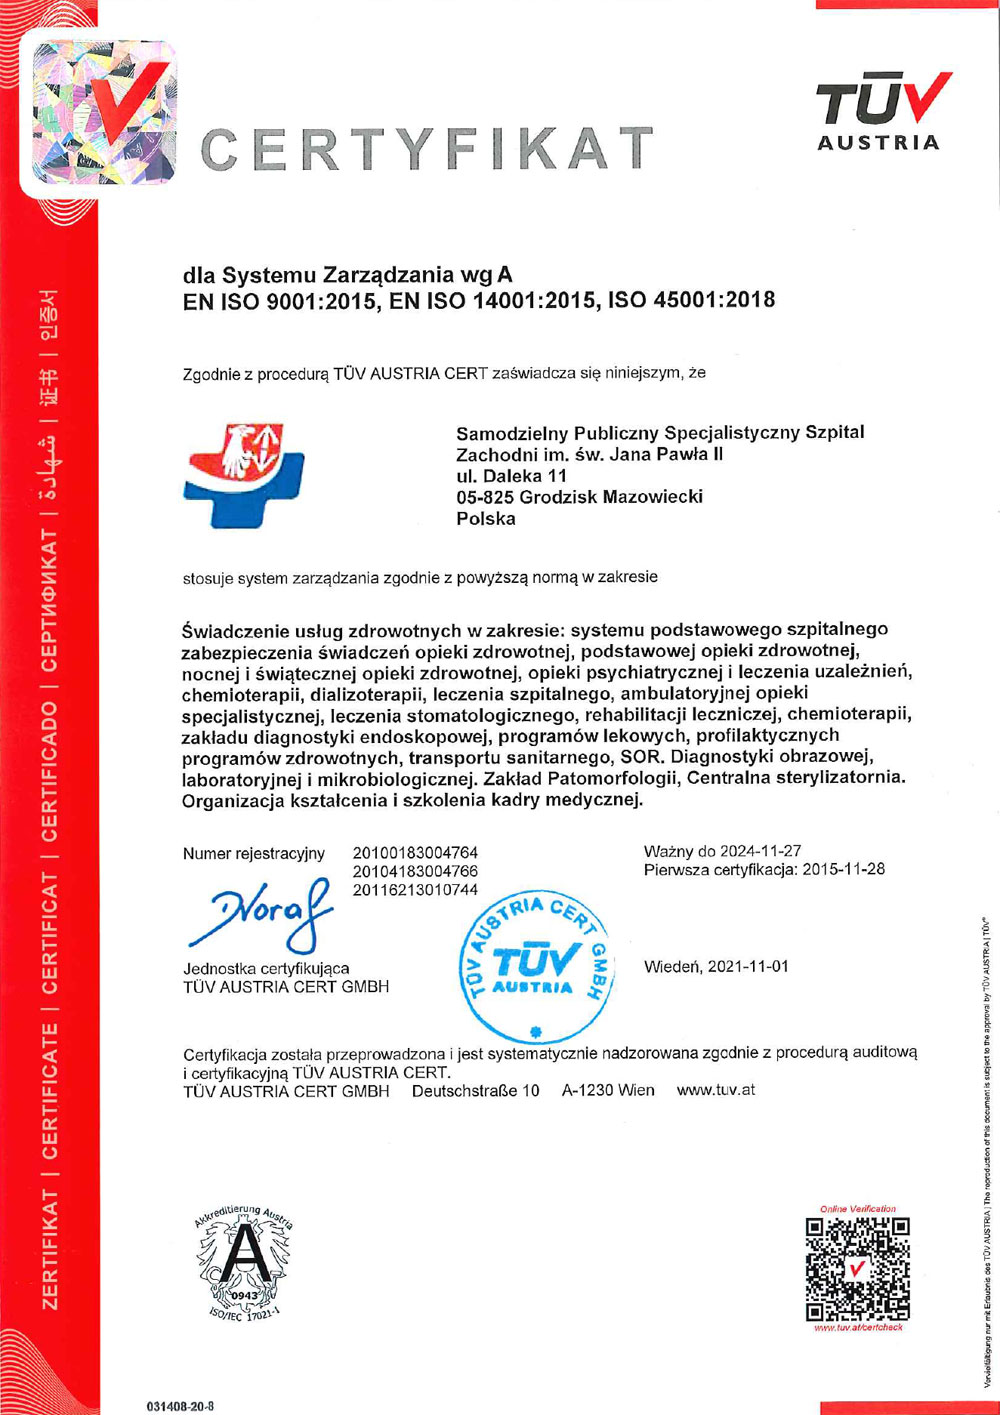 Certyfikat dla Systemu Zarządzania wg EN ISO 9001:2015, EN ISO 14001:2015, ISO 45001:2018 – miniatura certyfikatu - powiększ zdjęcie